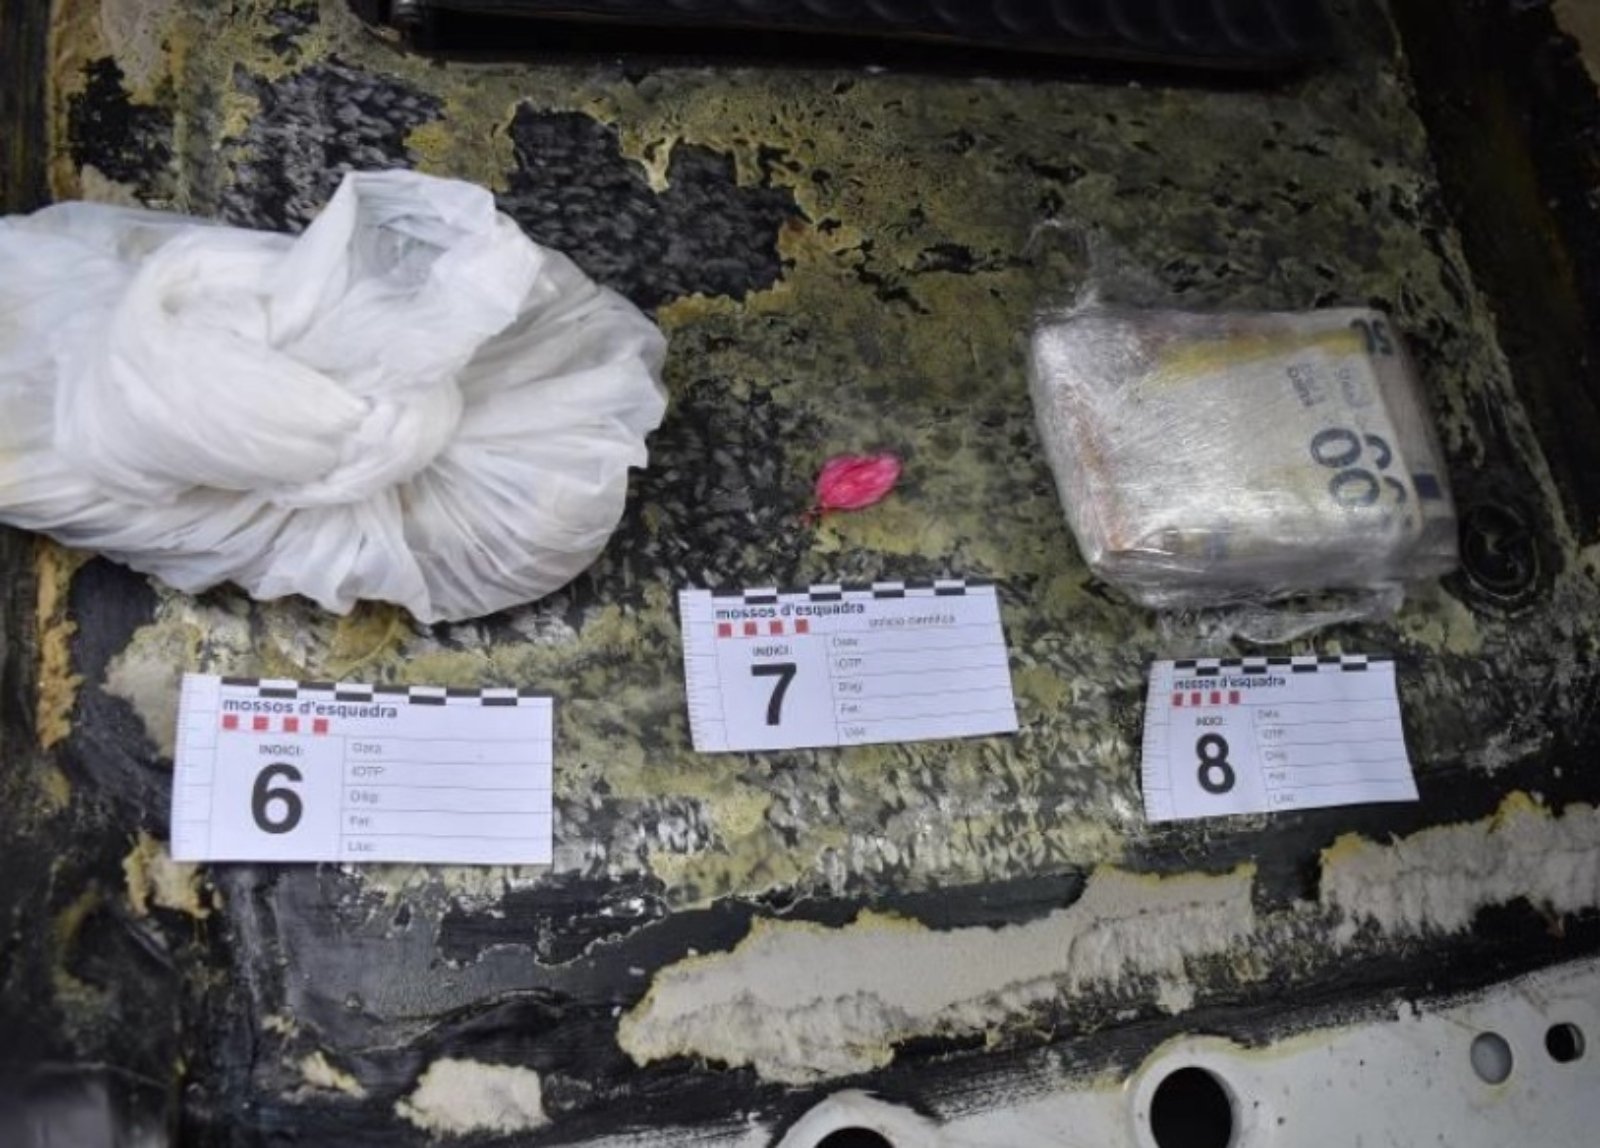 230214 NdP 019 RPP Els Mossos d'Esquadra intervenen un quilogram de cocaïna i 32.400 € en un vehicle a Lleida (1) (1)